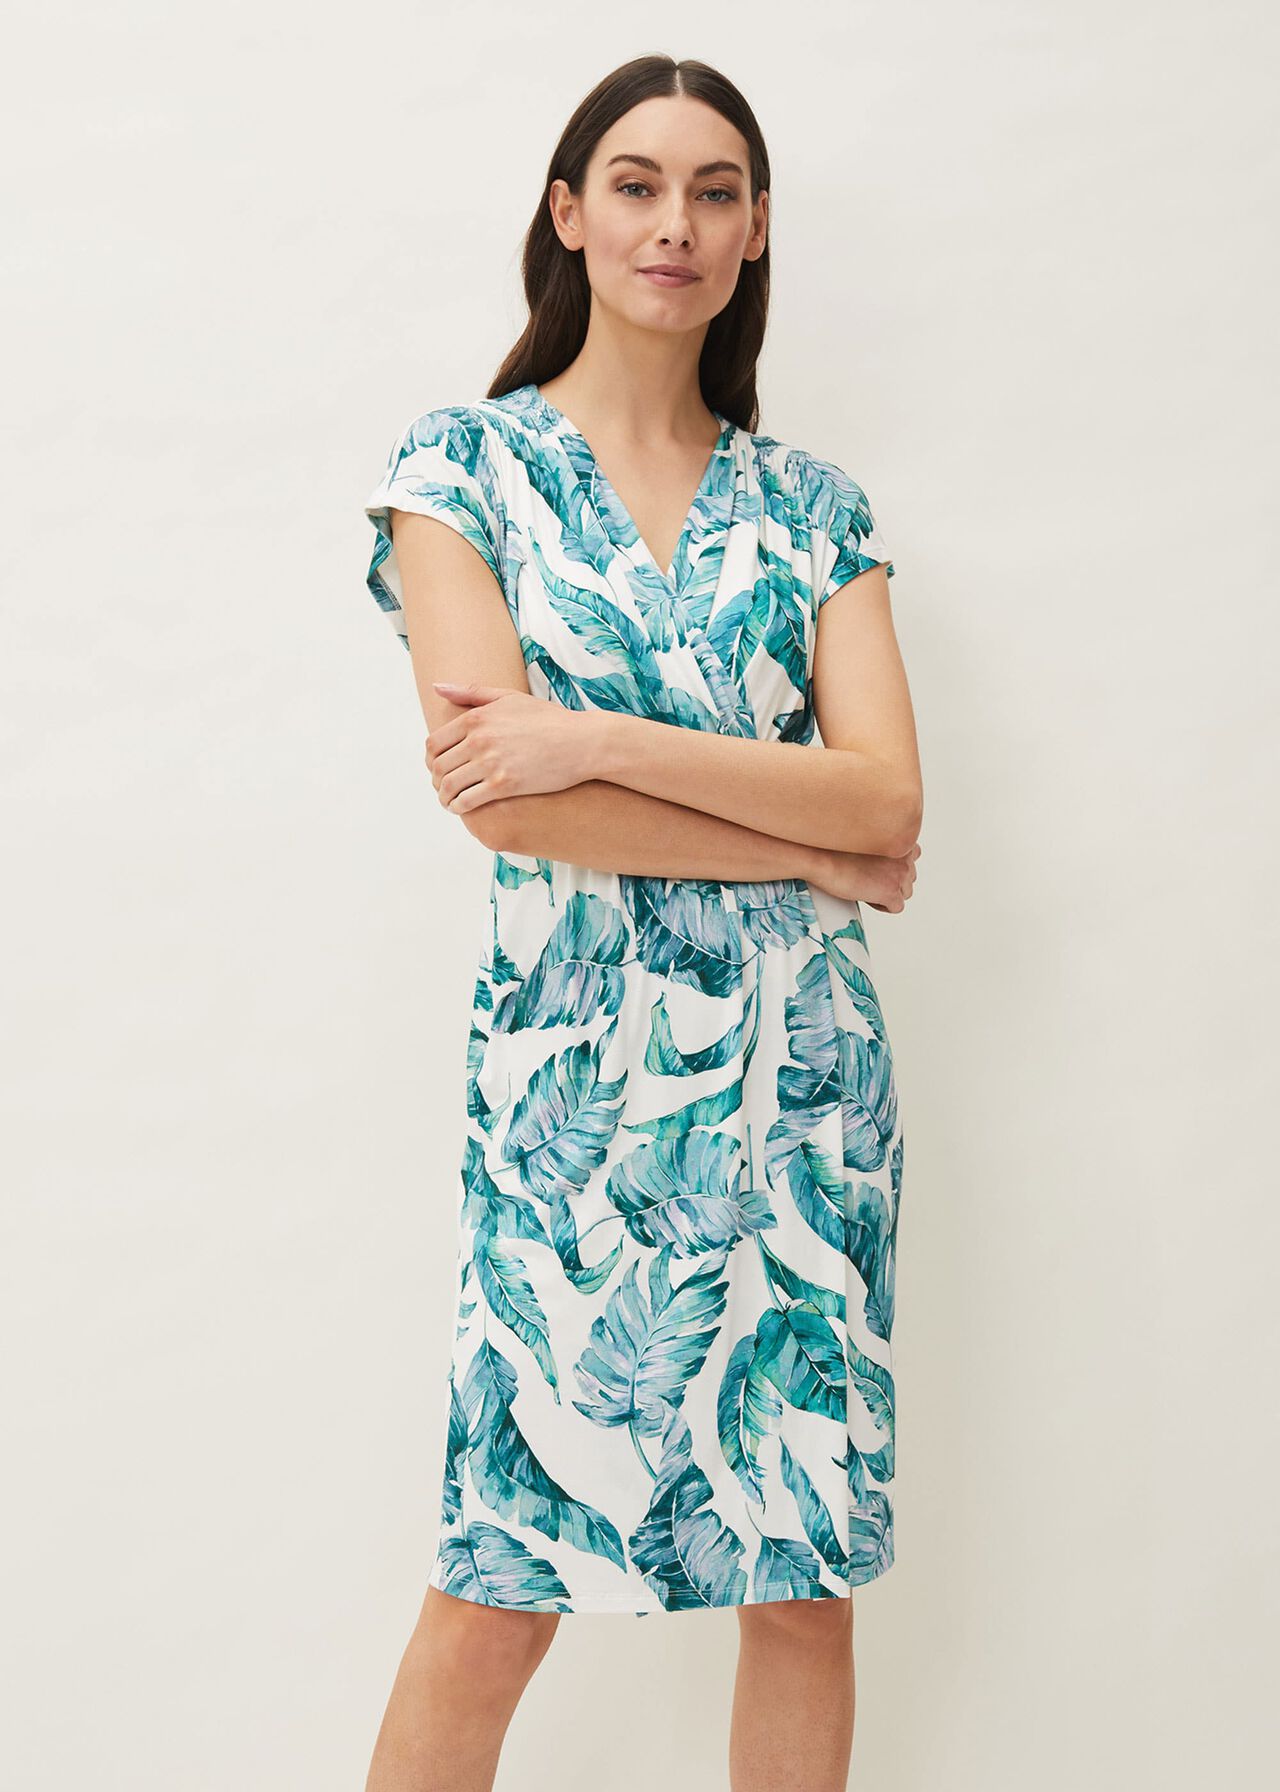 Kurzärmeliges, figurbetontes Jerseykleid mit Palmen-Print |